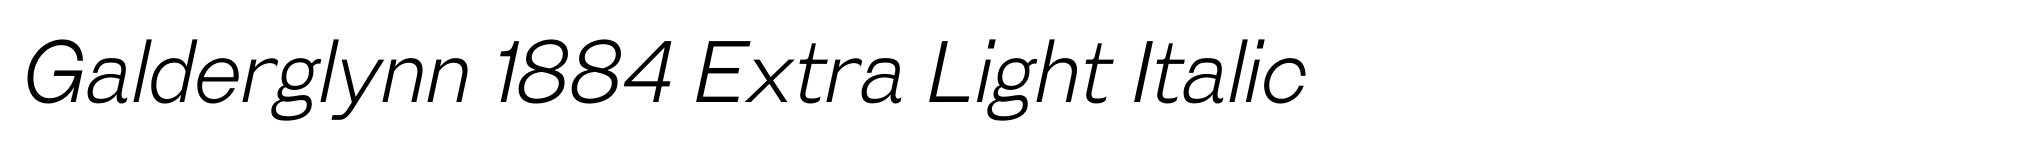 Galderglynn 1884 Extra Light Italic image